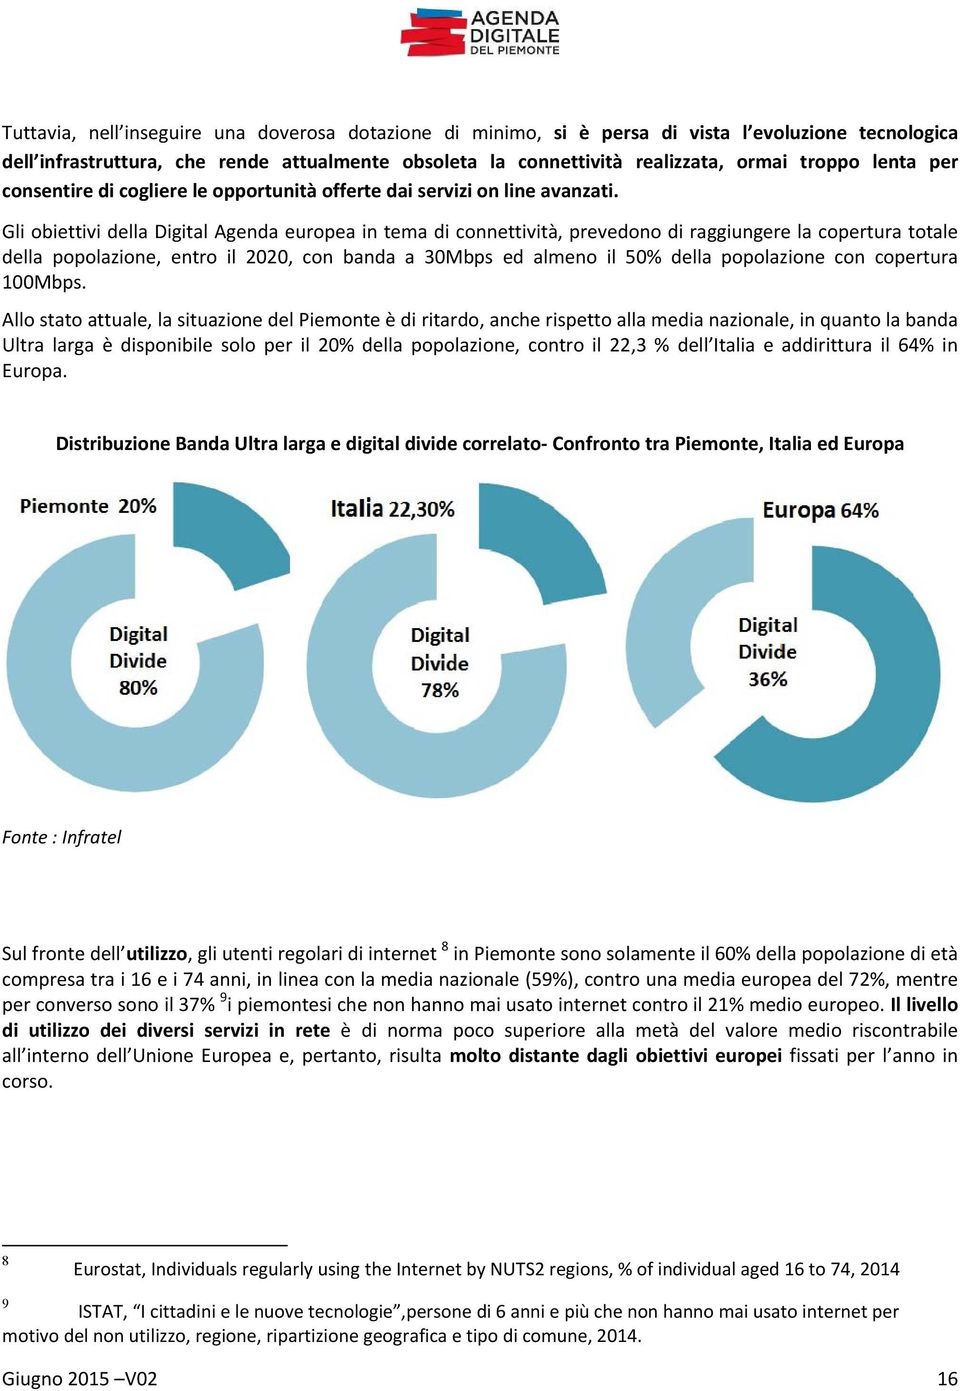 Gli obiettivi della Digital Agenda europea in tema di connettività, prevedono di raggiungere la copertura totale della popolazione, entro il 2020, con banda a 30Mbps ed almeno il 50% della